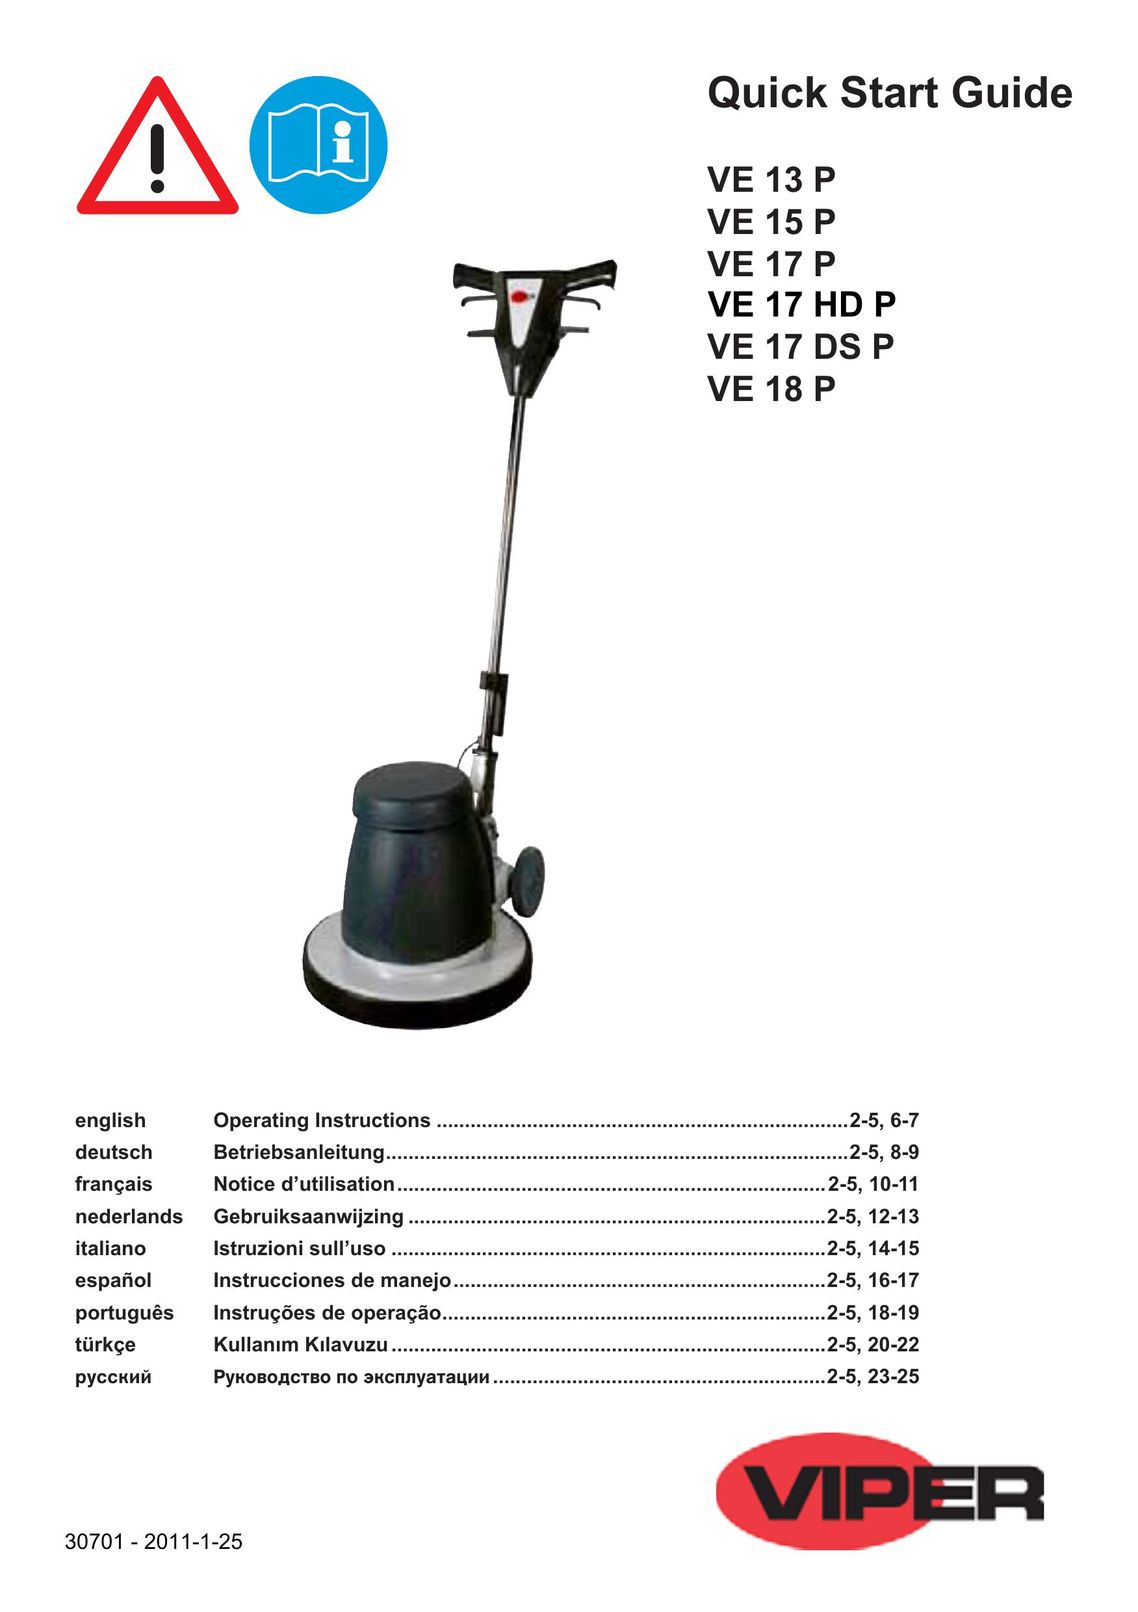 Viper VE 18 P Carpet Cleaner User Manual